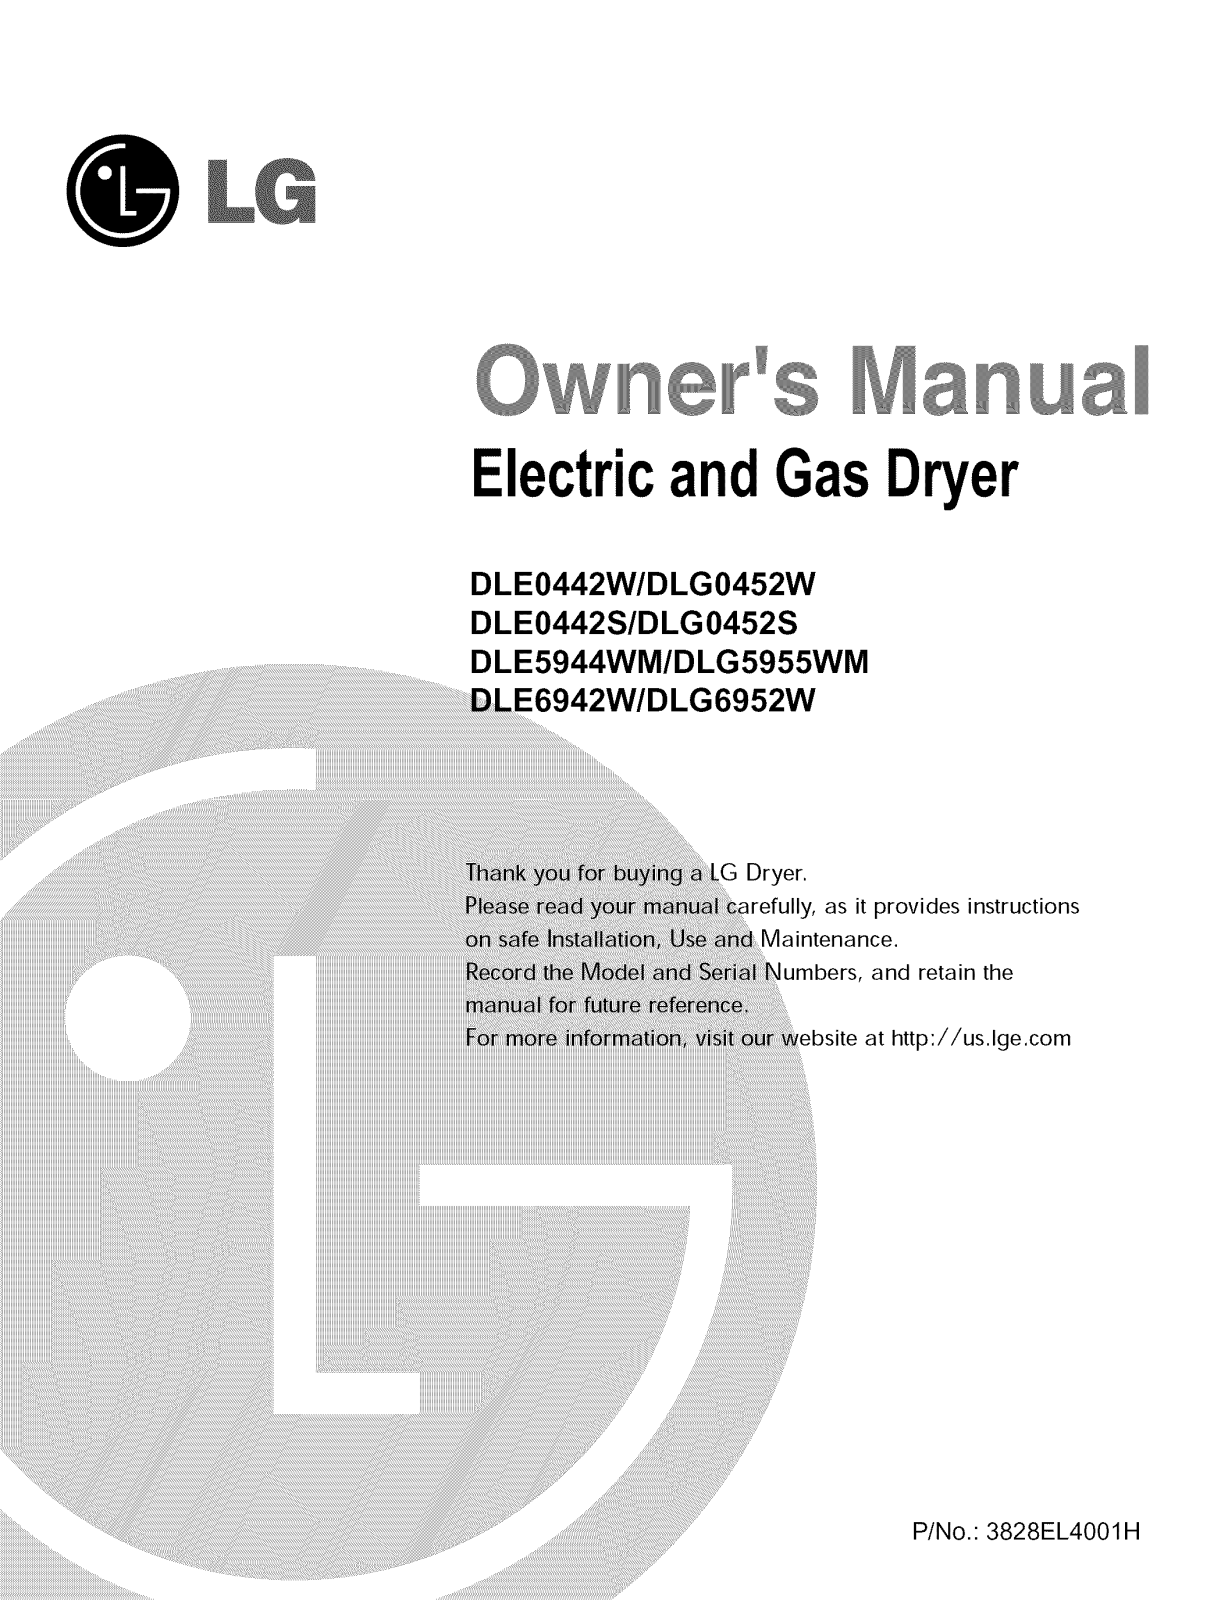 LG DLG6952W, DLG0452W, DLG0452G, DLE0442W01, DLE0442W Owner’s Manual